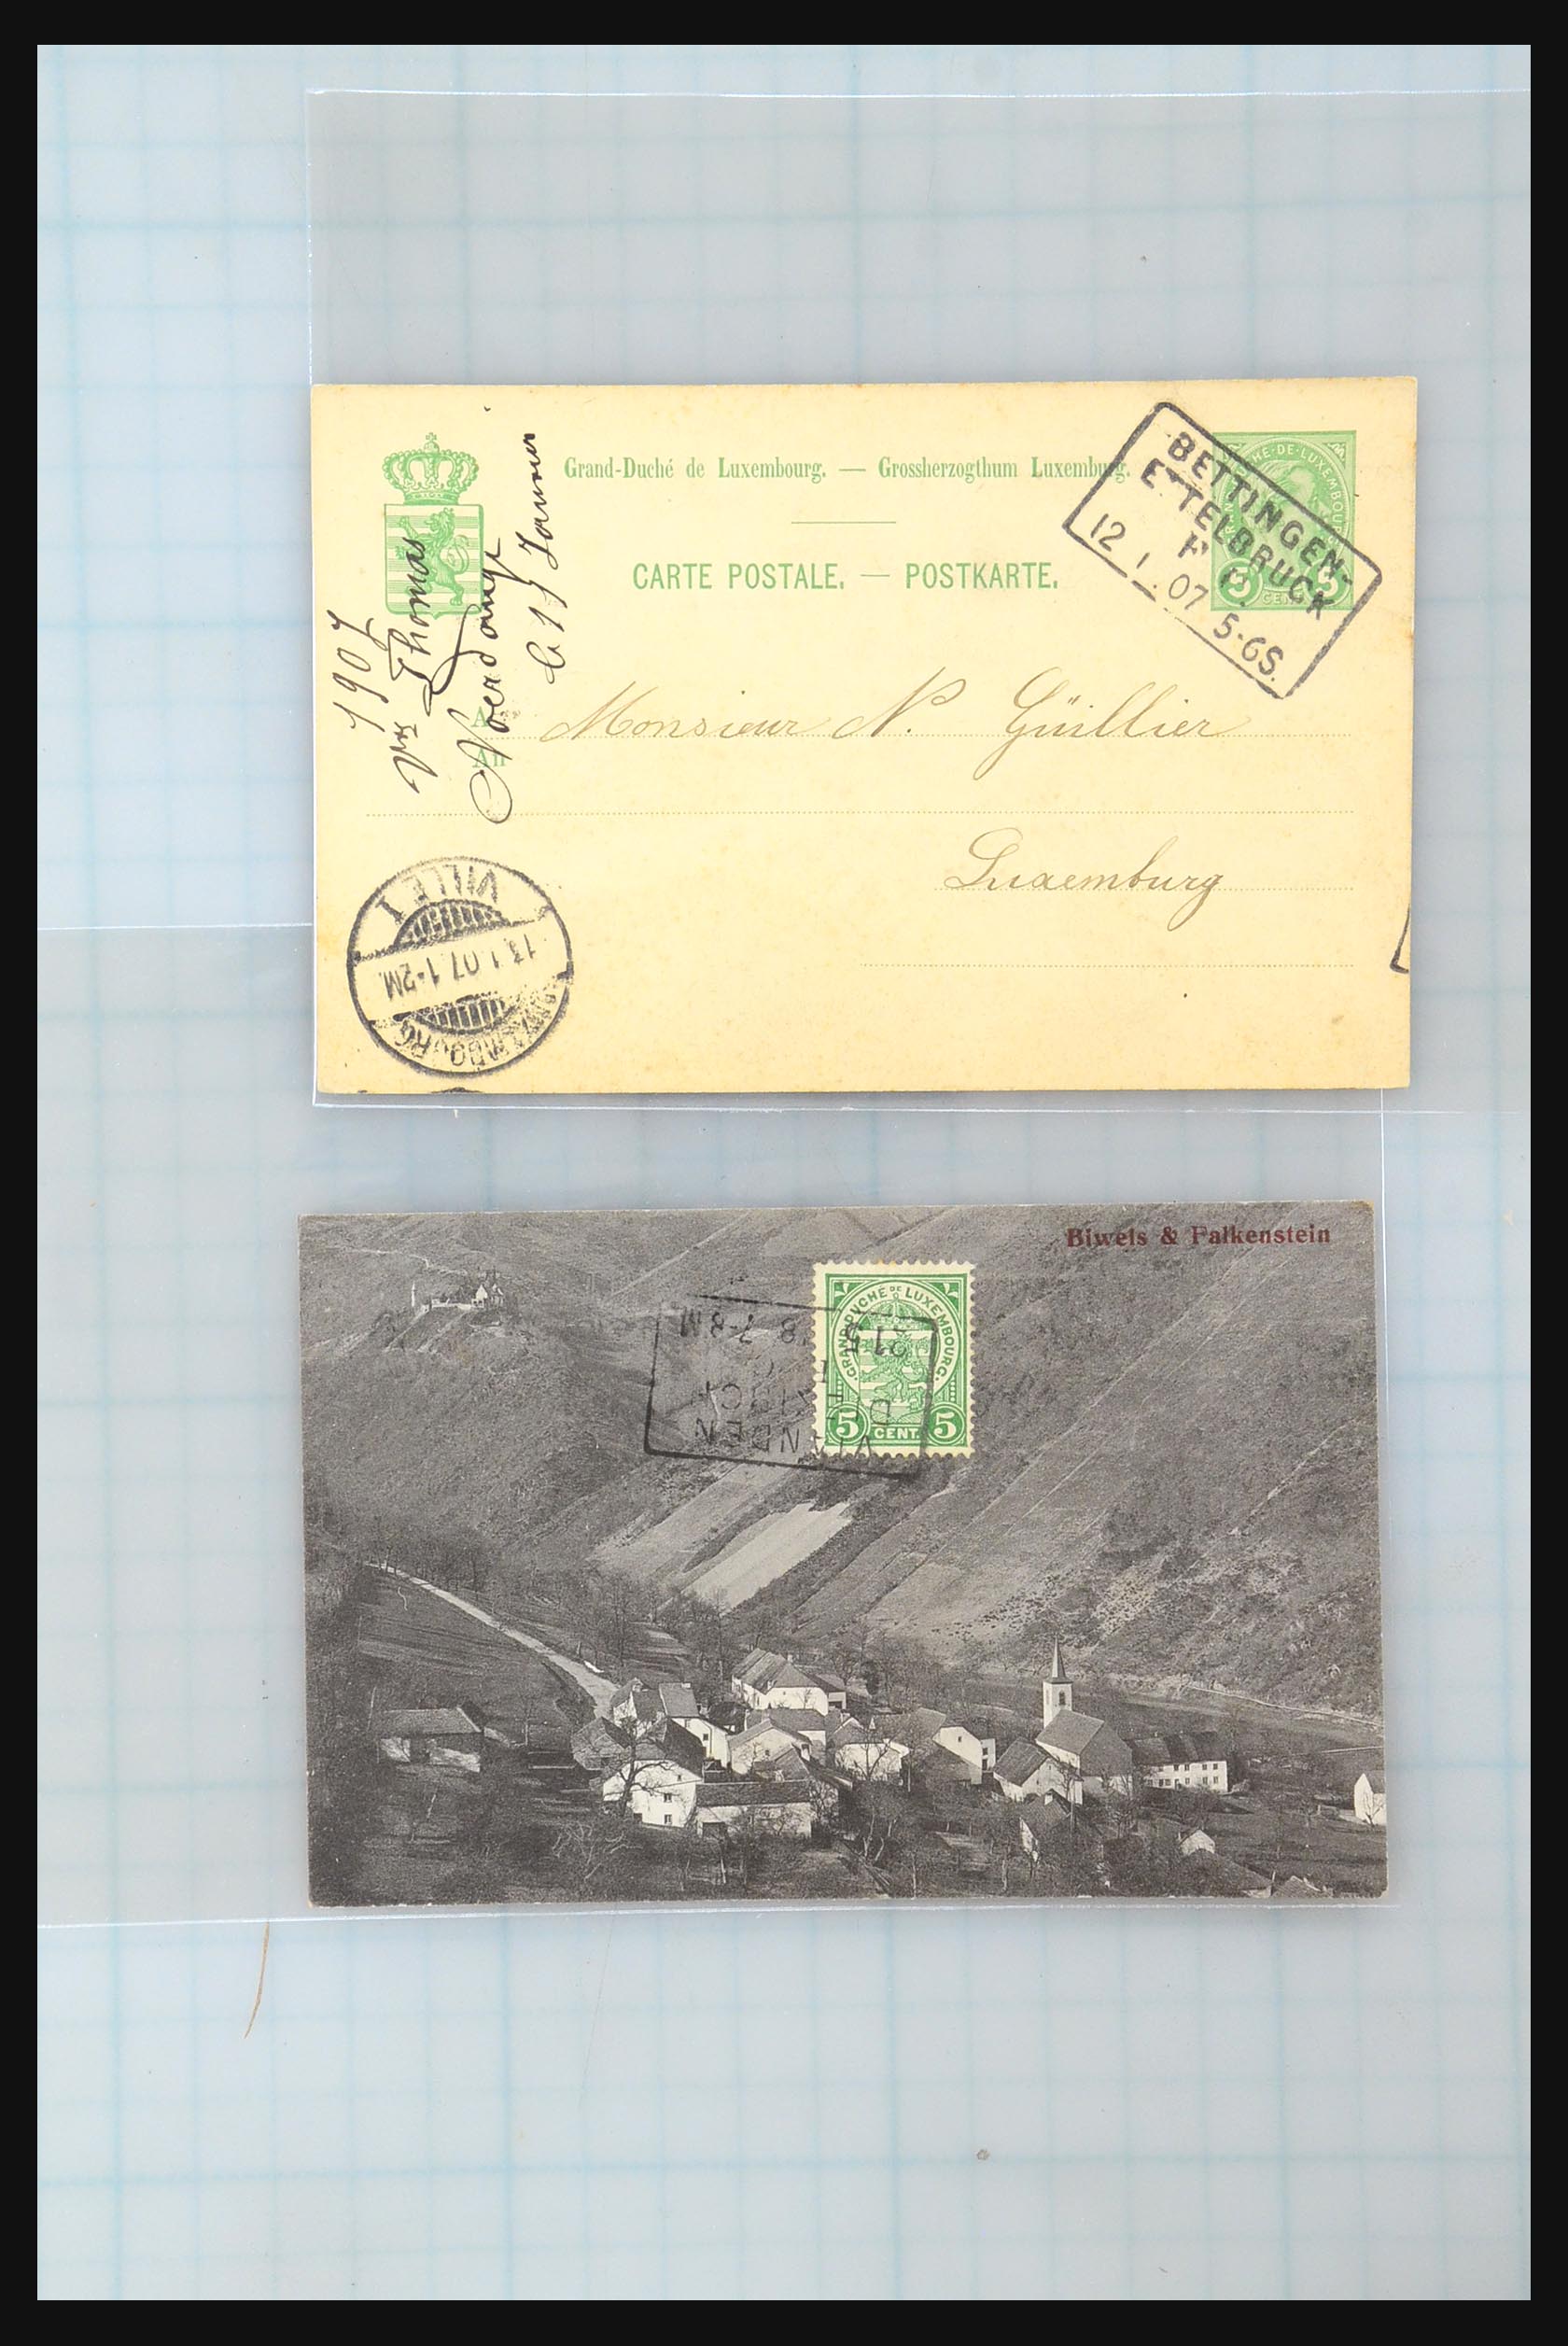 31358 080 - 31358 Portugal/Luxemburg/Griekenland brieven 1880-1960.